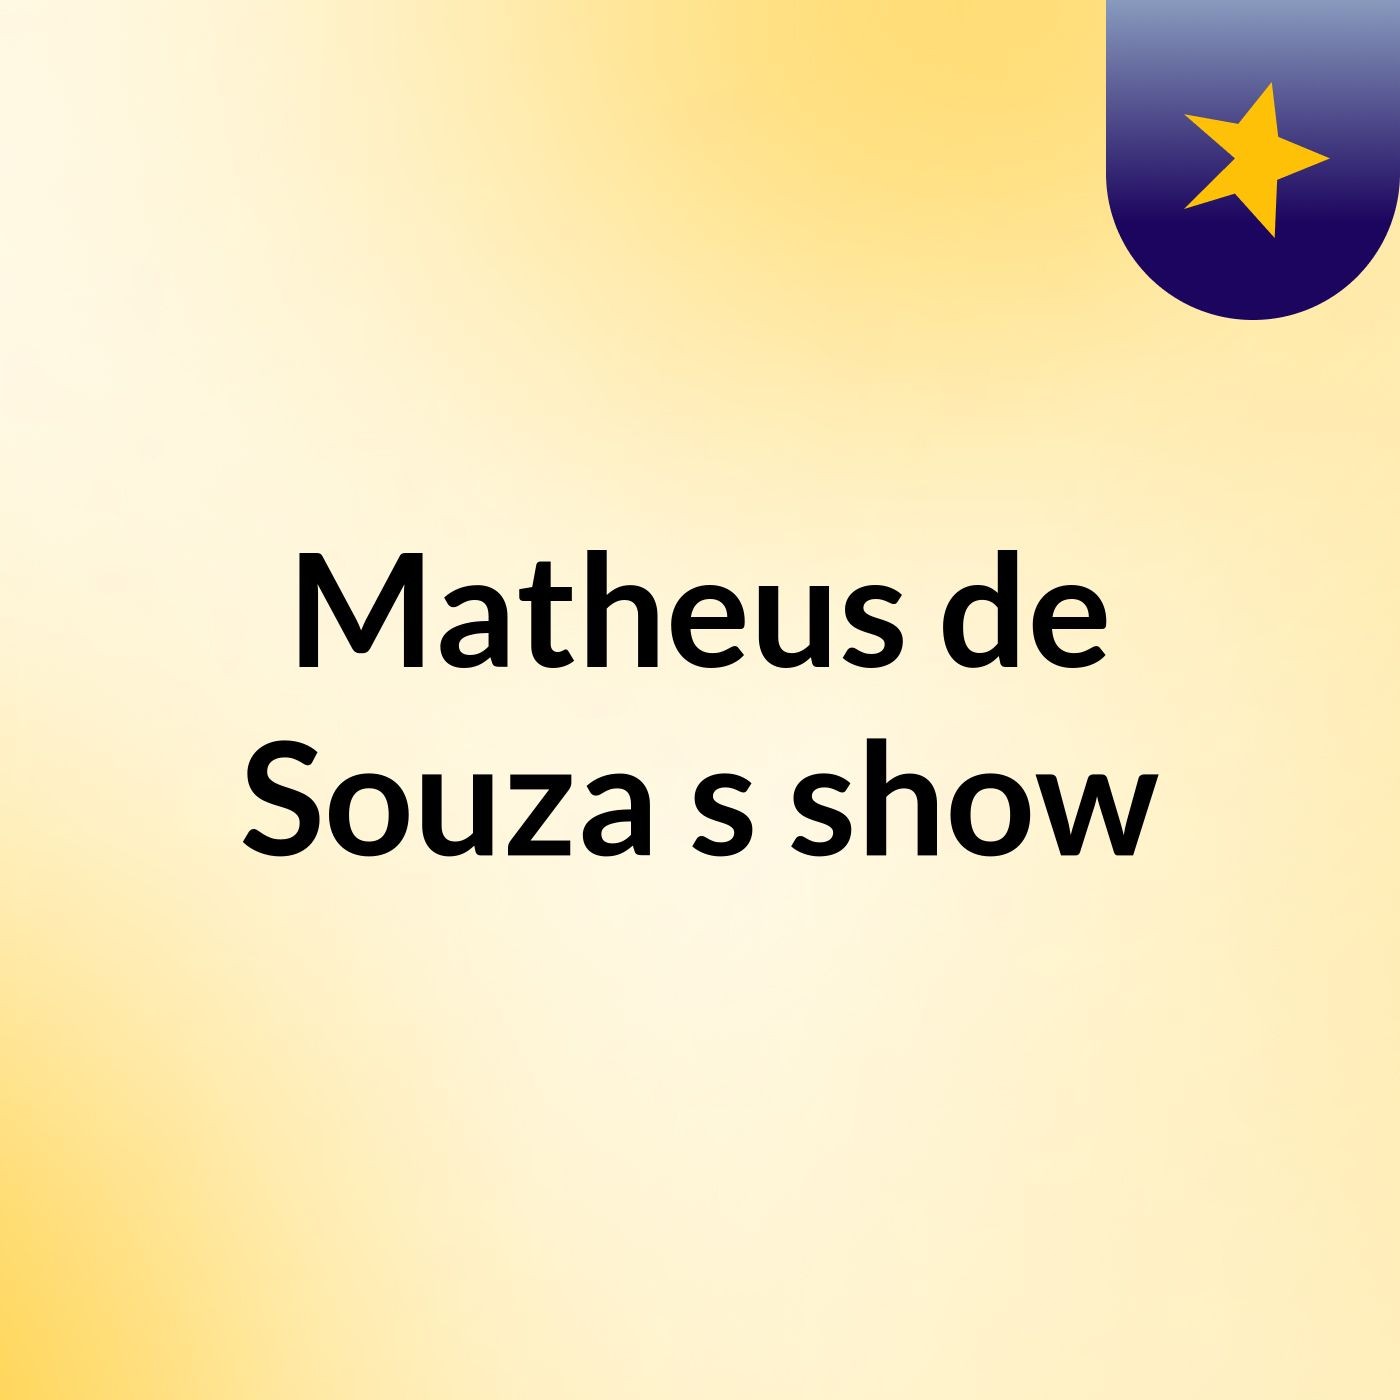 Matheus de Souza's show